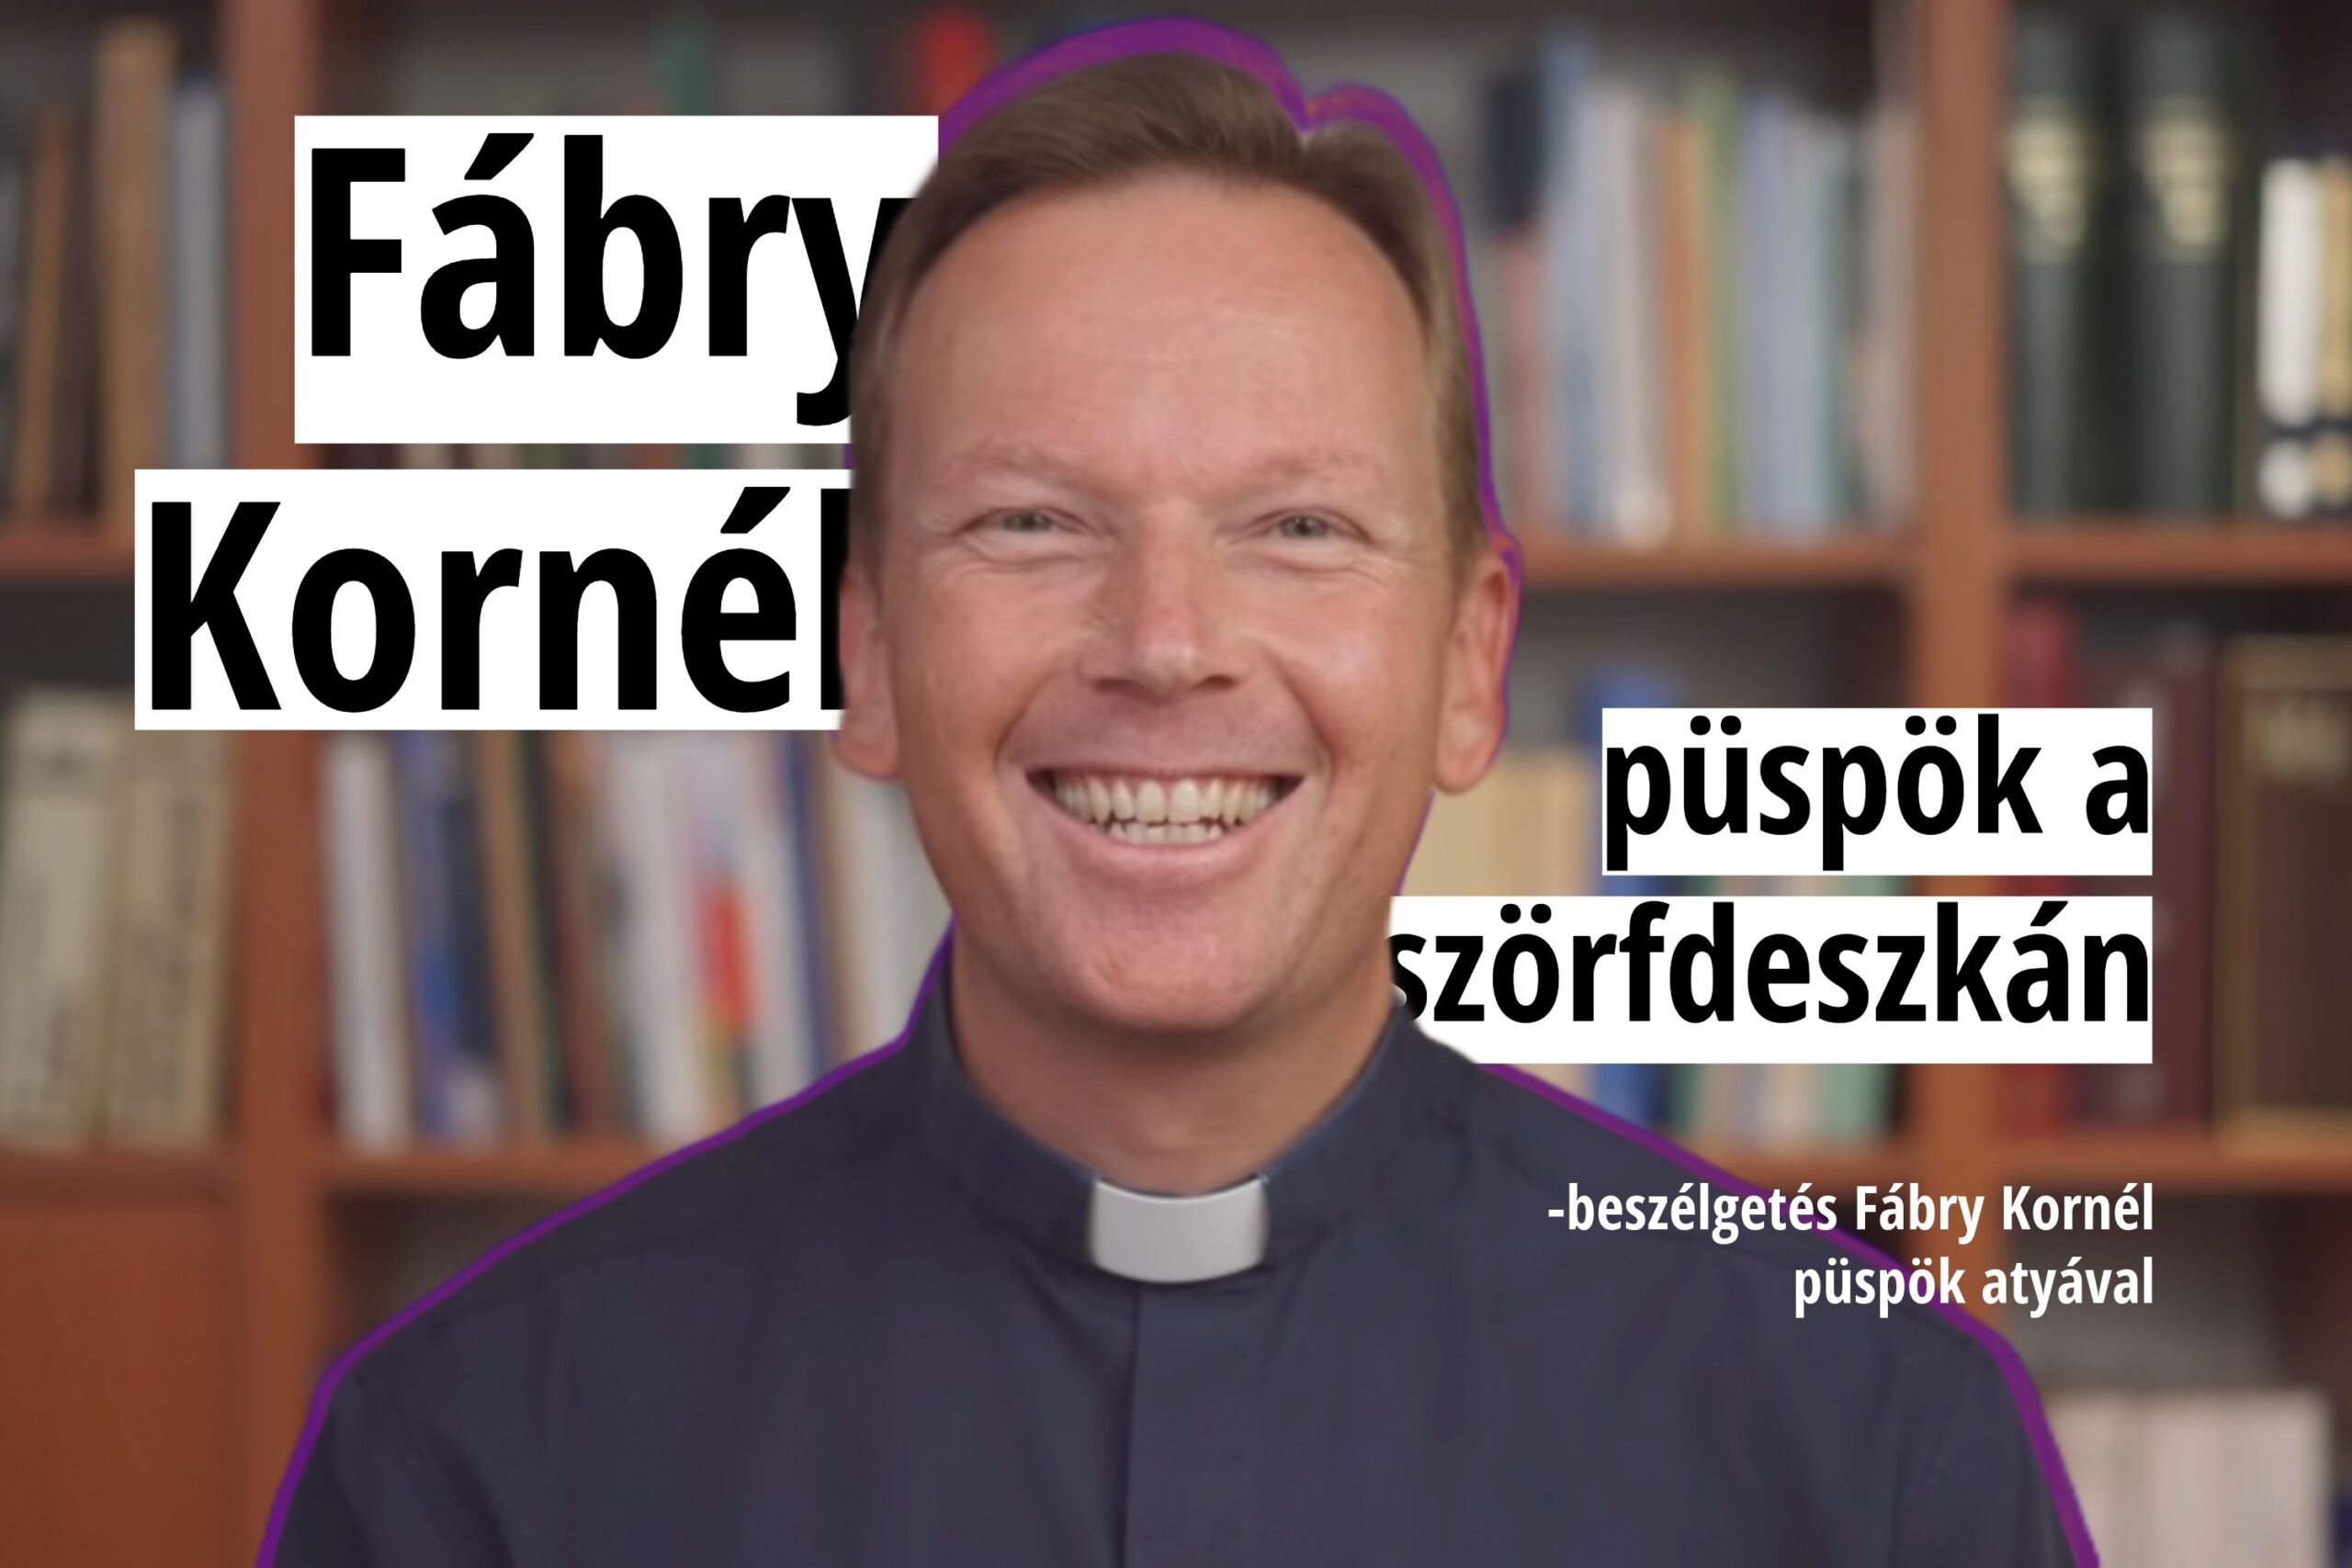 Püspök a szörfdeszkán – beszélgetés Fábry Kornél püspök atyával